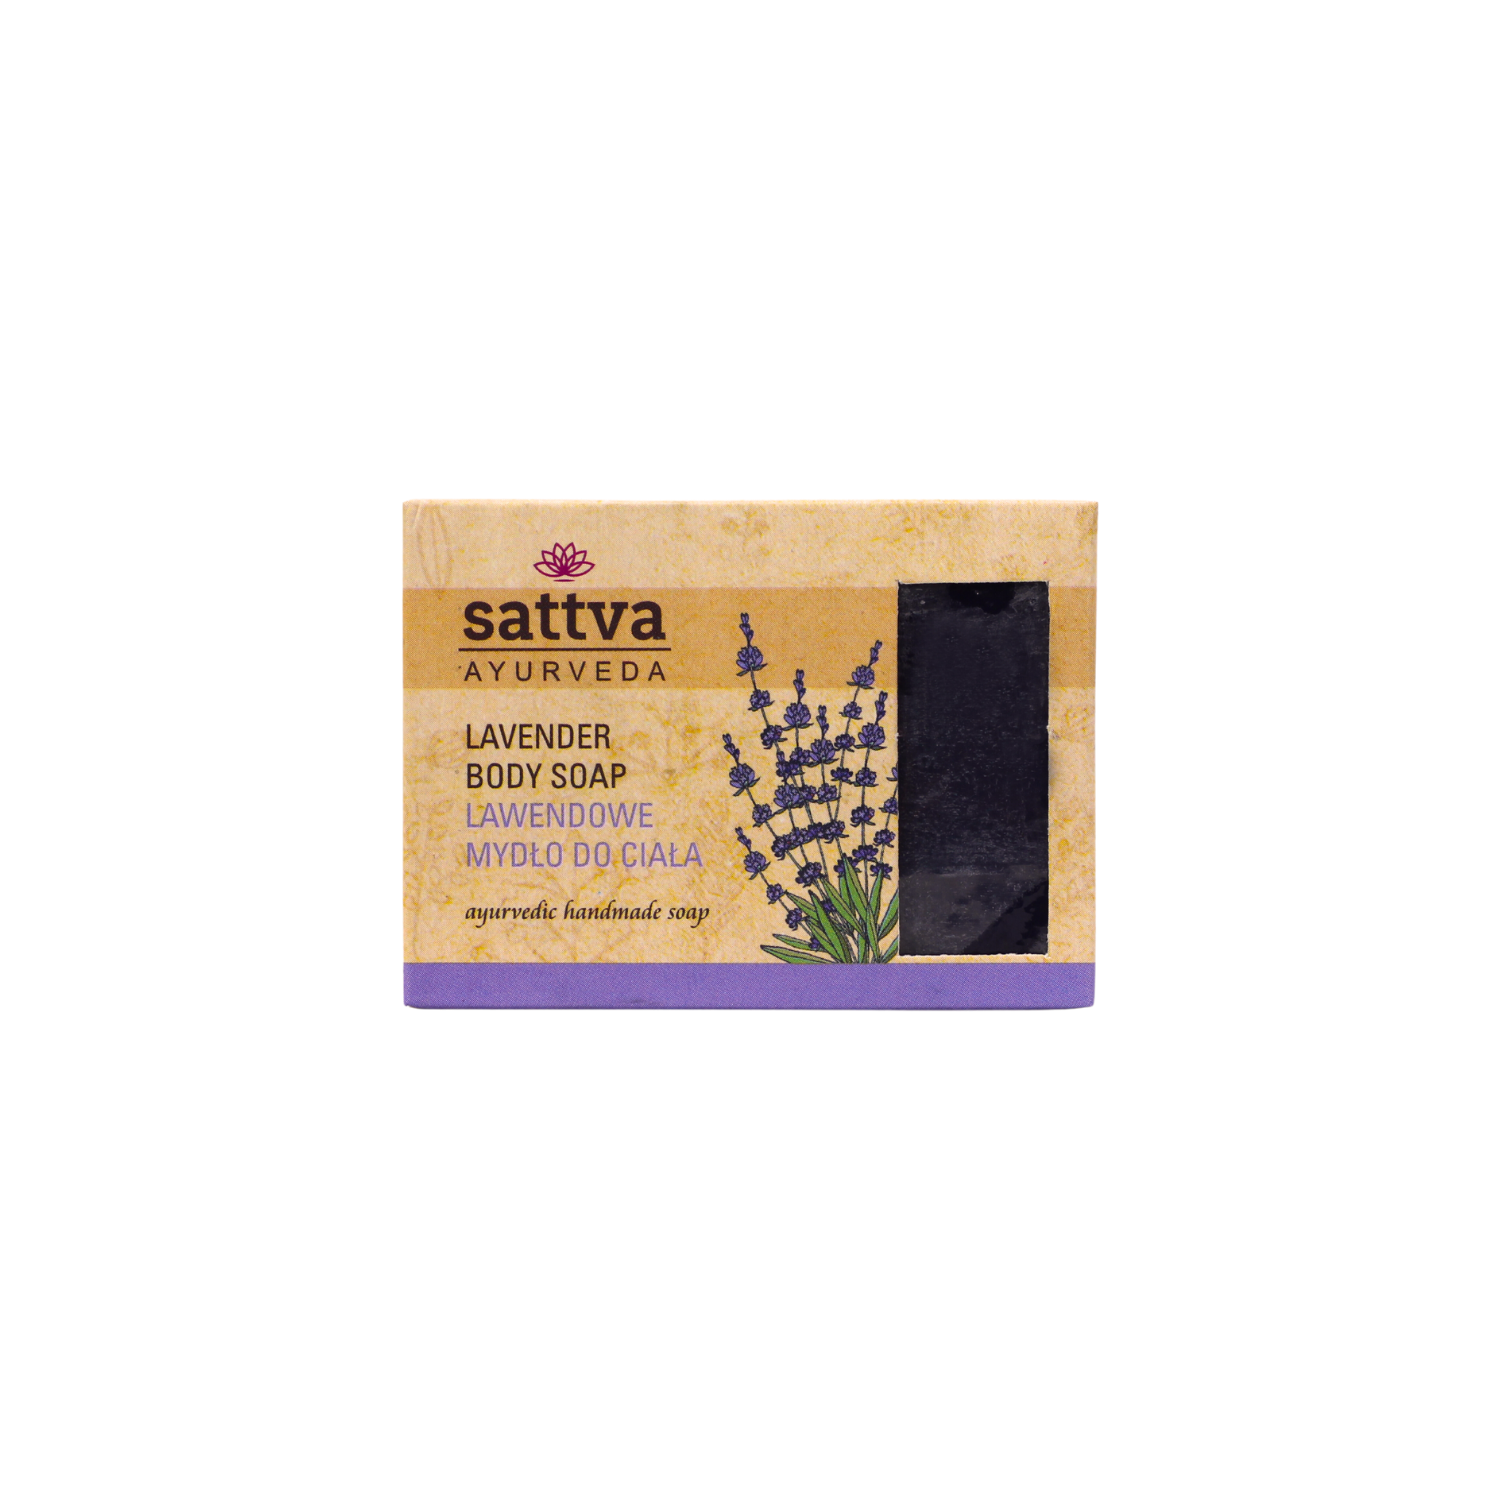 Мыло для тела Sattva, 125 гр цена и фото